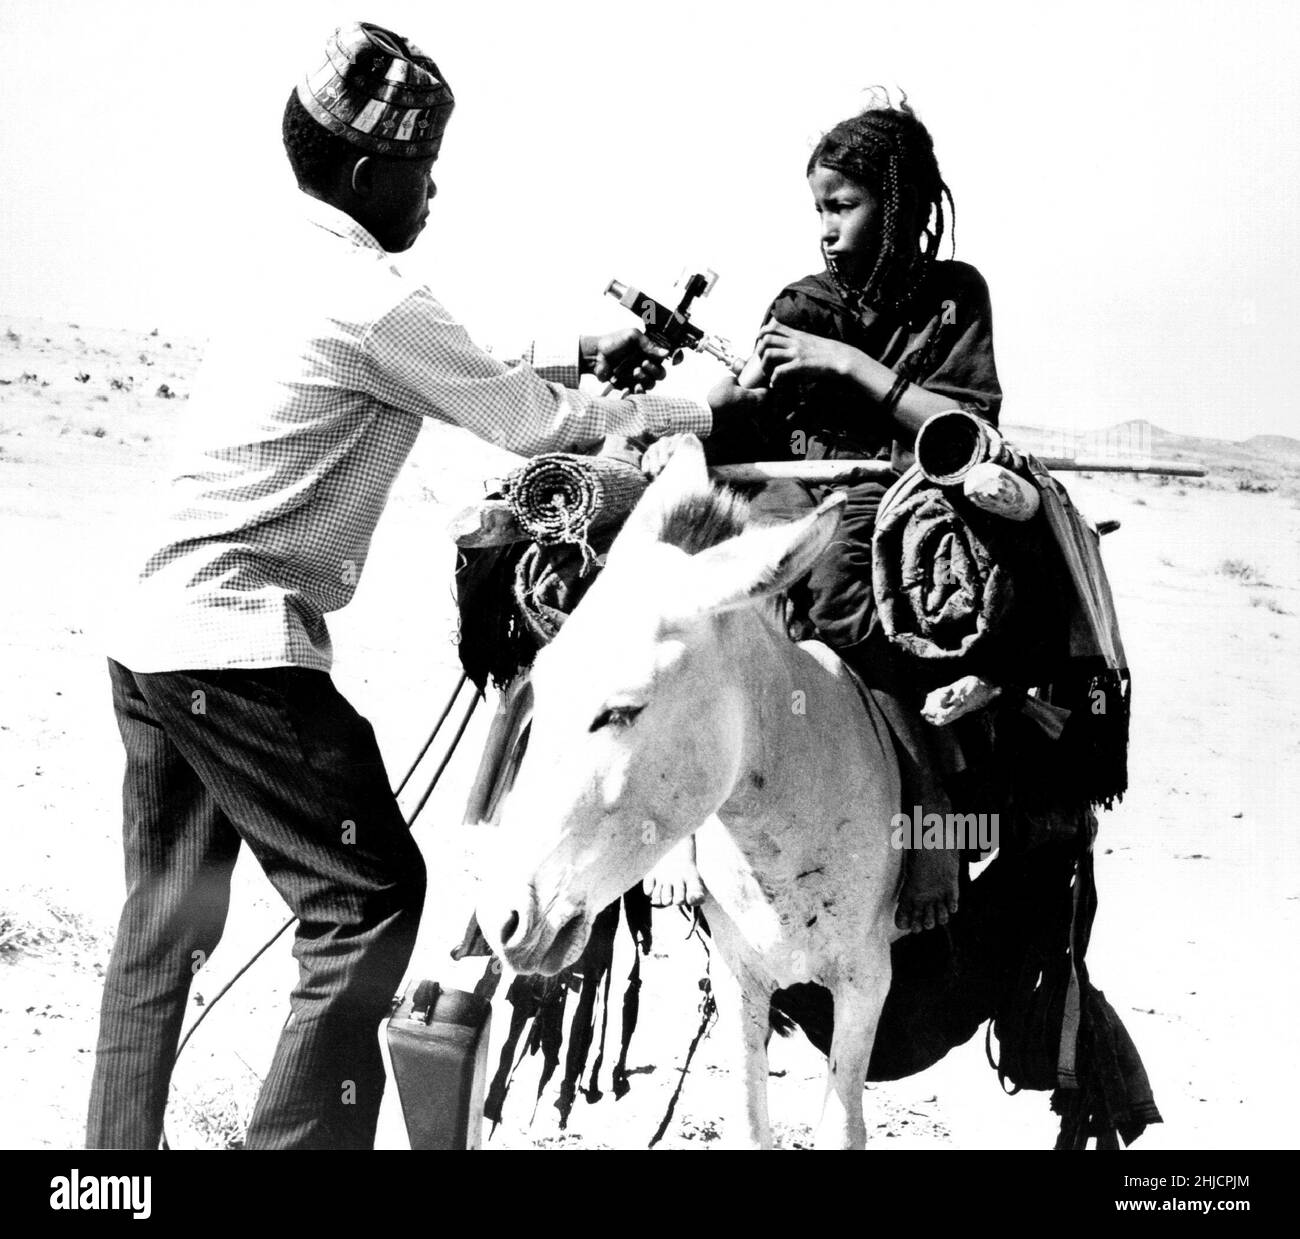 Questa ragazza nomade Tuareg sta ricevendo una vaccinazione contro il vaiolo in questa foto scattata nel 1967 in Mali, Africa occidentale. L'ultimo caso mondiale di vaiolo è stato documentato come avvenuto in Africa nel 1977. Nel 1980, L’OMS ha dichiarato l’eradicazione globale del vaiolo a causa di una campagna di vaccinazione a livello mondiale. L'OMS ha quindi raccomandato che tutti i paesi cessino la vaccinazione. Foto Stock